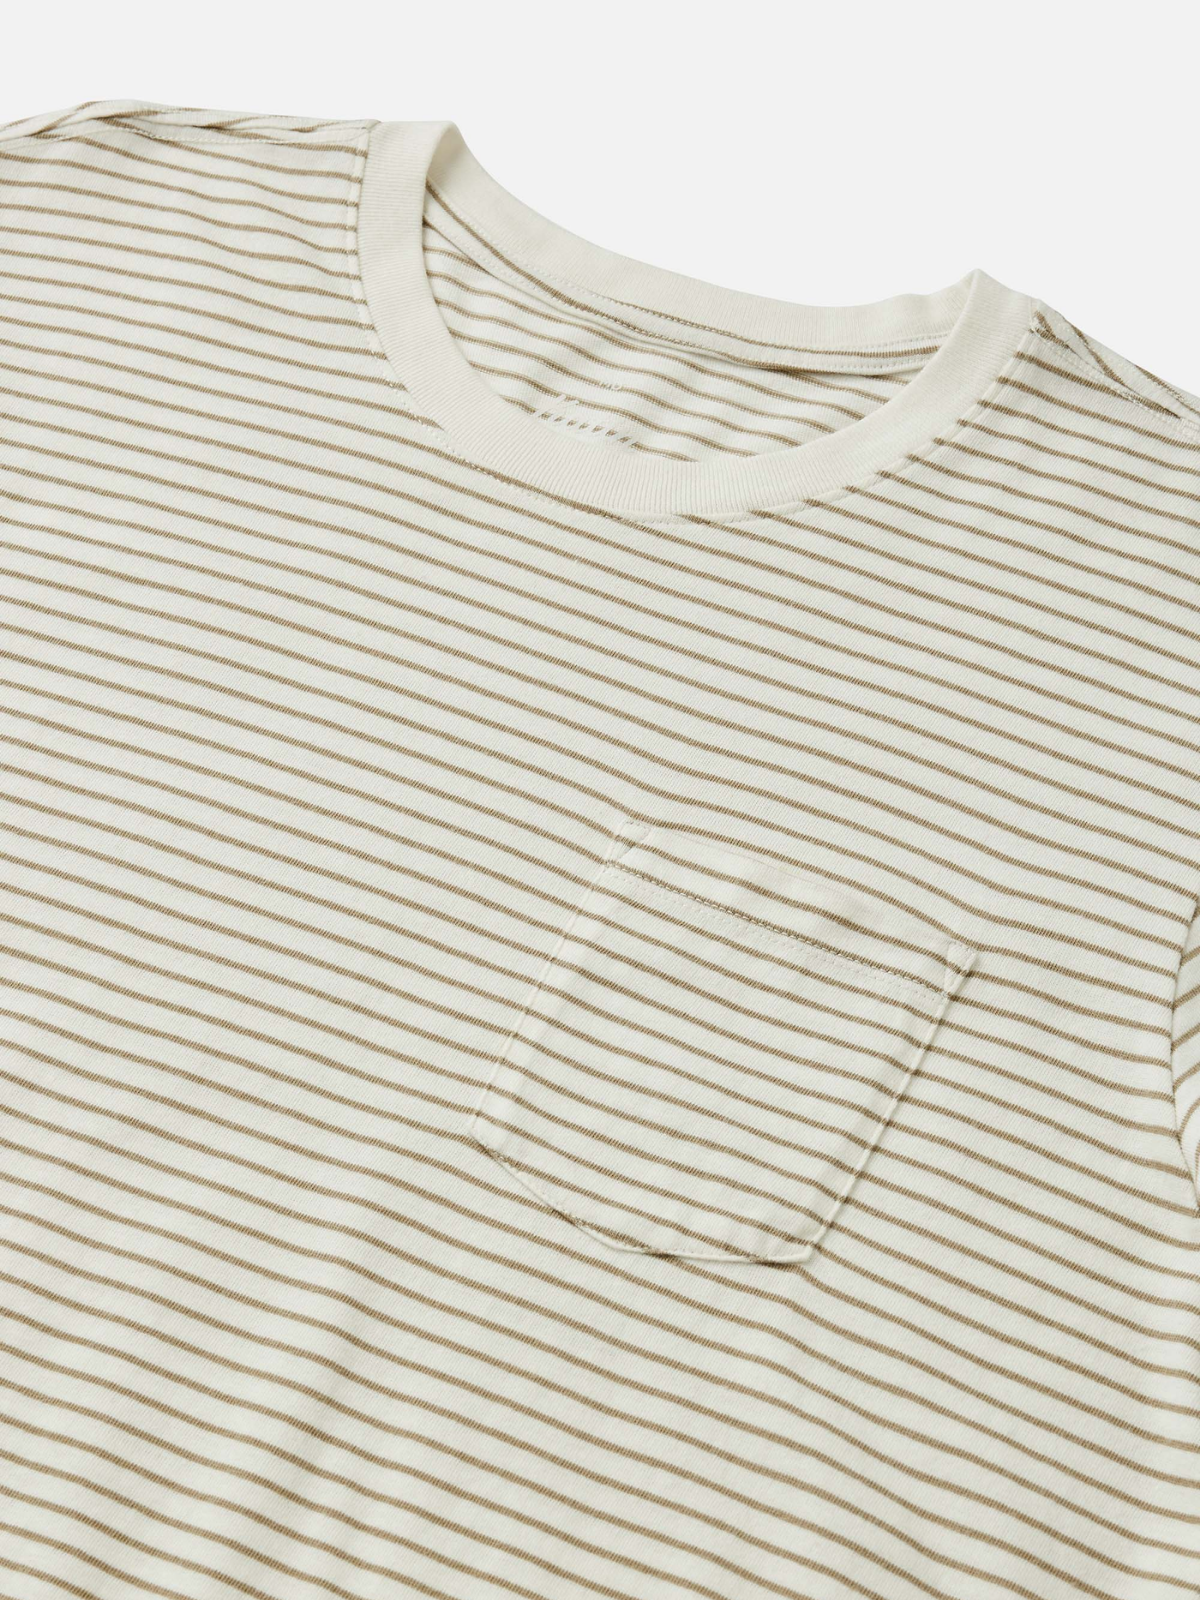 katin finley pocket tee aluminum tan white horizontal stripe 100% cotton t-shirt kempt athens ga georgia men's clothing store